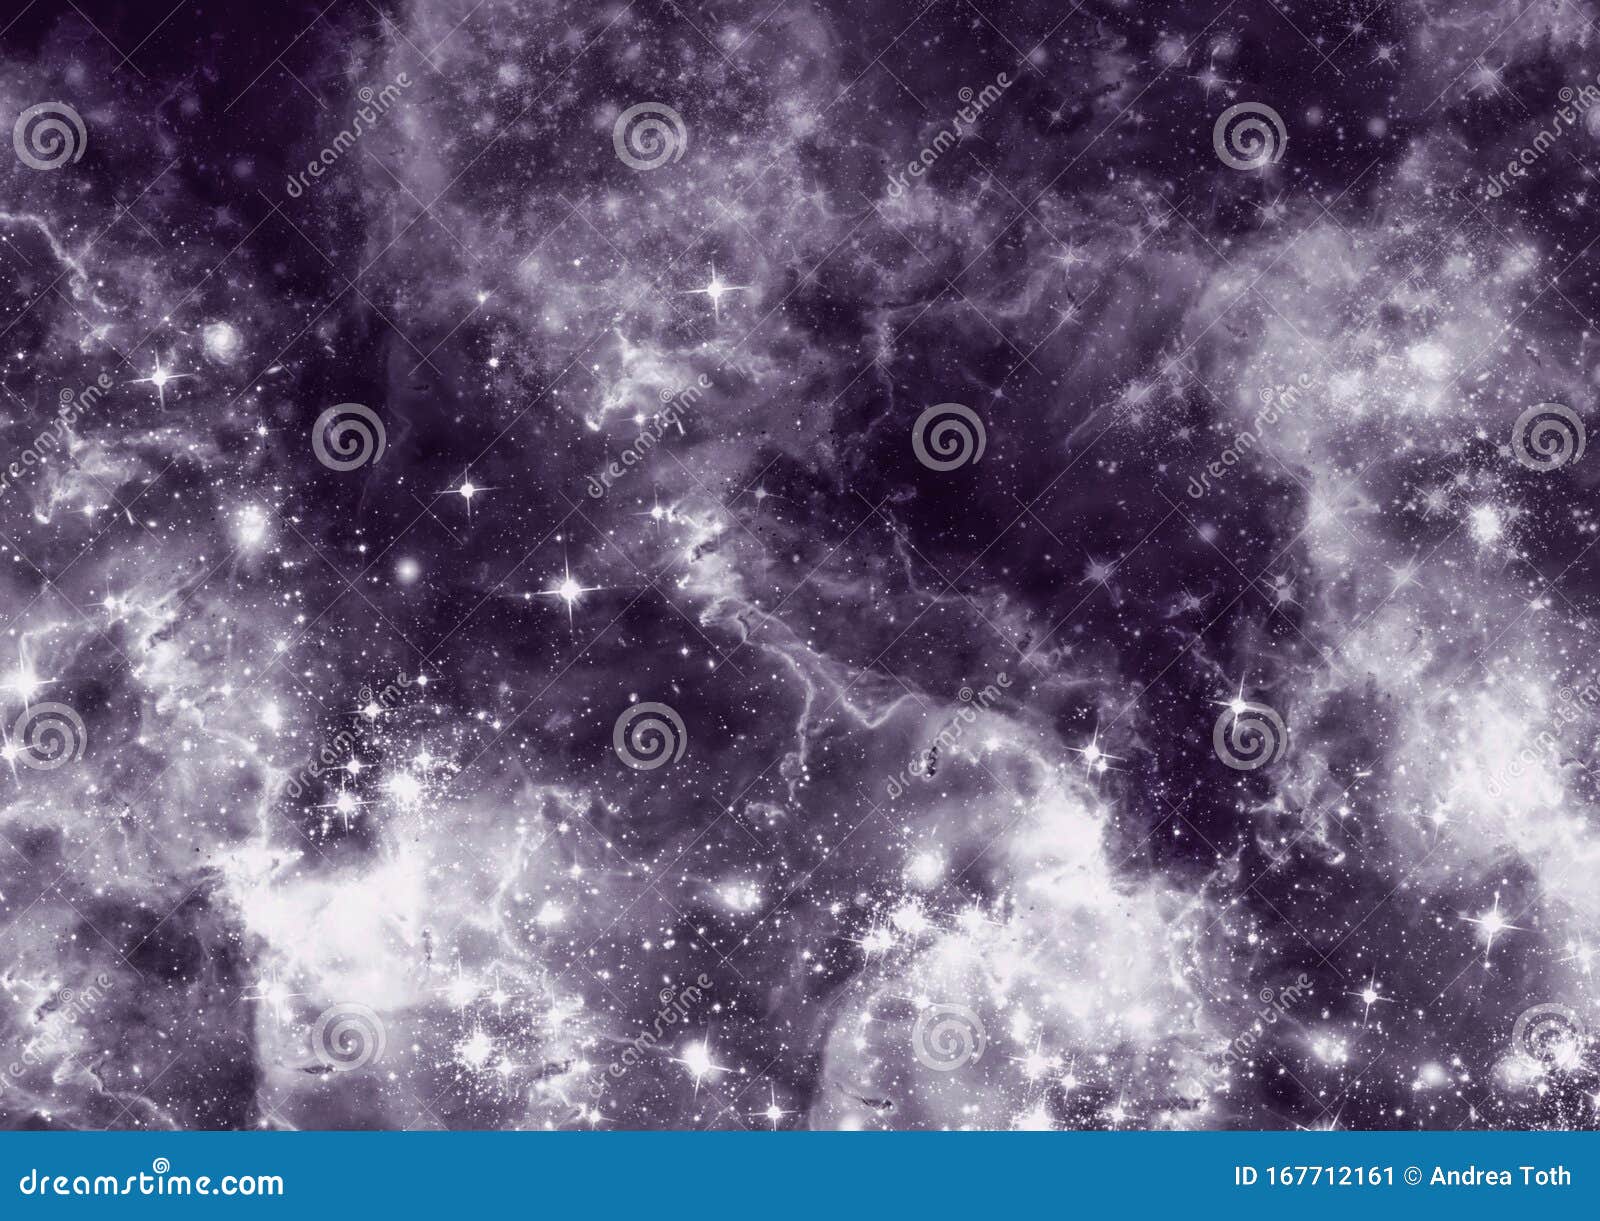 Hình nền vũ trụ: Hãy trang trí cho màn hình của bạn với những hình ảnh tuyệt đẹp của vũ trụ. Với những ngân hà xa xôi, ngôi sao sáng lấp lánh trên nền đen tối, bạn sẽ có những trải nghiệm tuyệt vời khi truy cập vào điện thoại của mình.